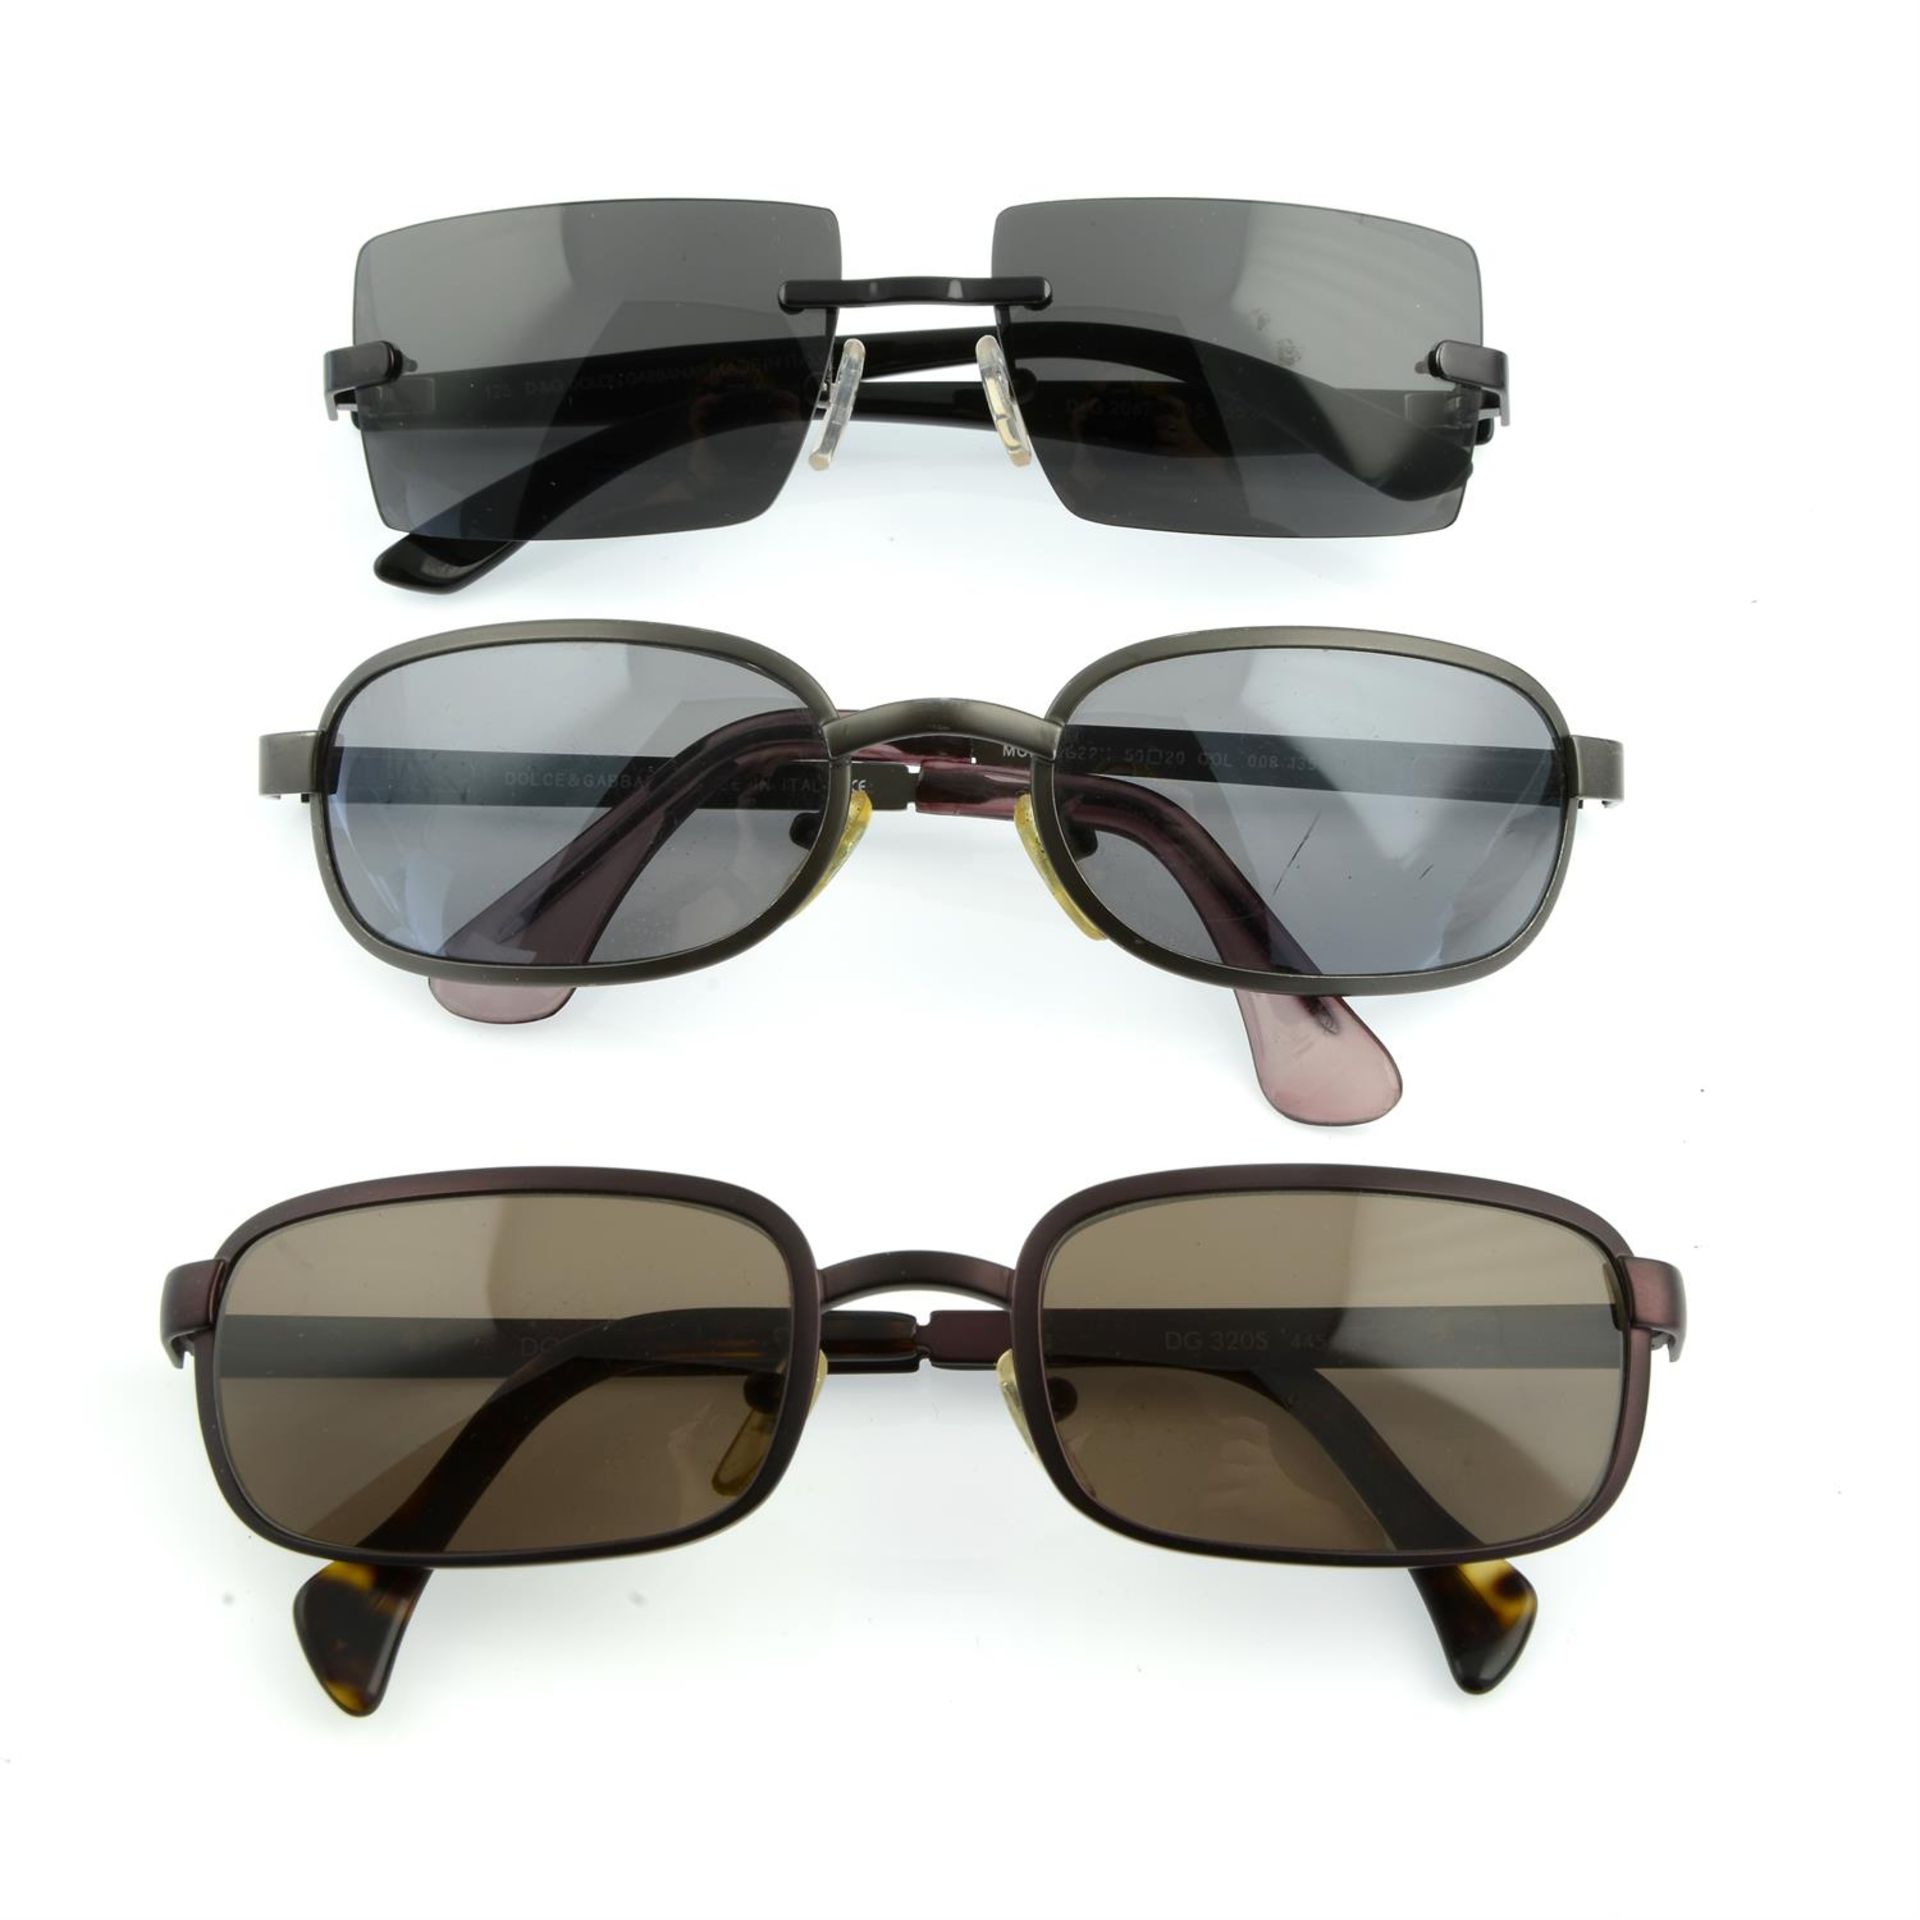 DOLCE & GABBANA - three pairs of sunglasses.